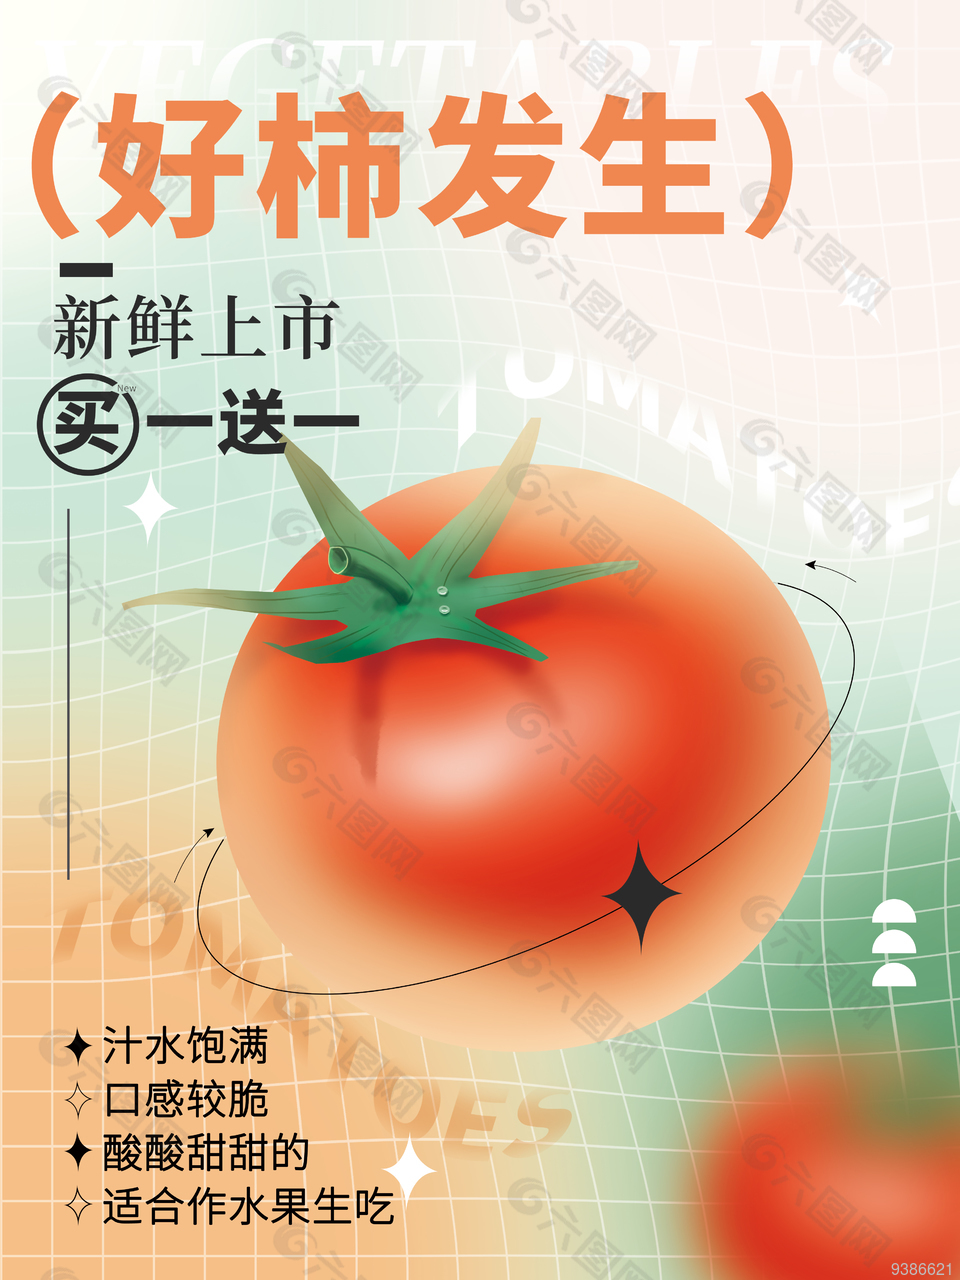 新潮风西红柿促销格子海报